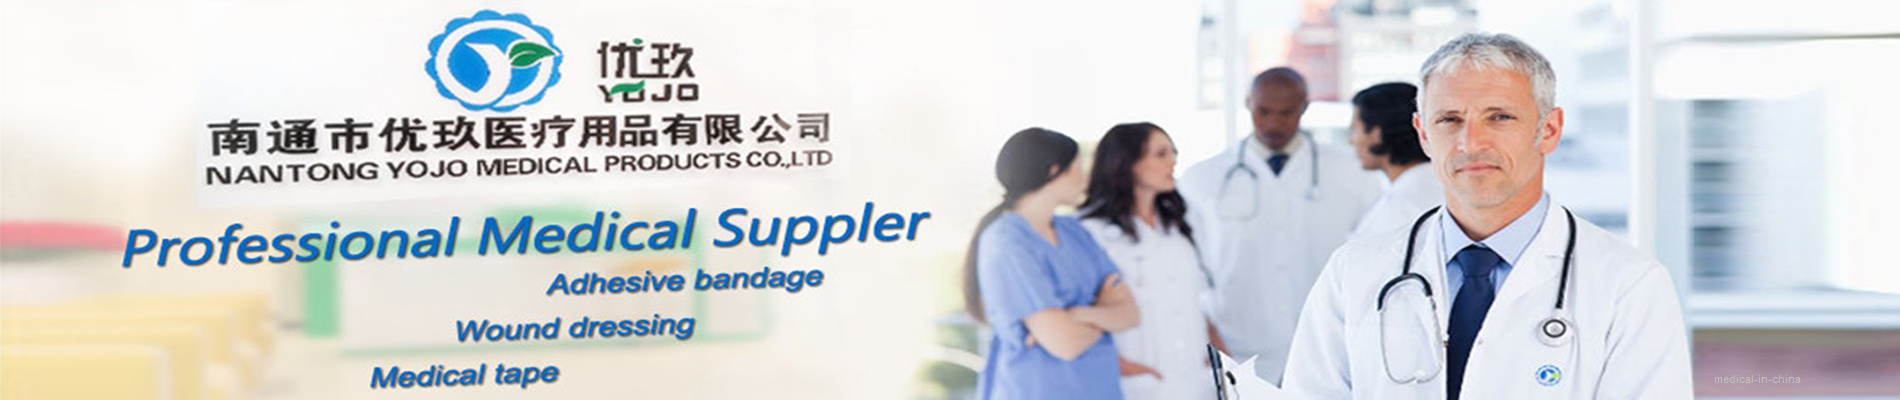 Nantong City YOJO Medical Products Co.,Ltd.